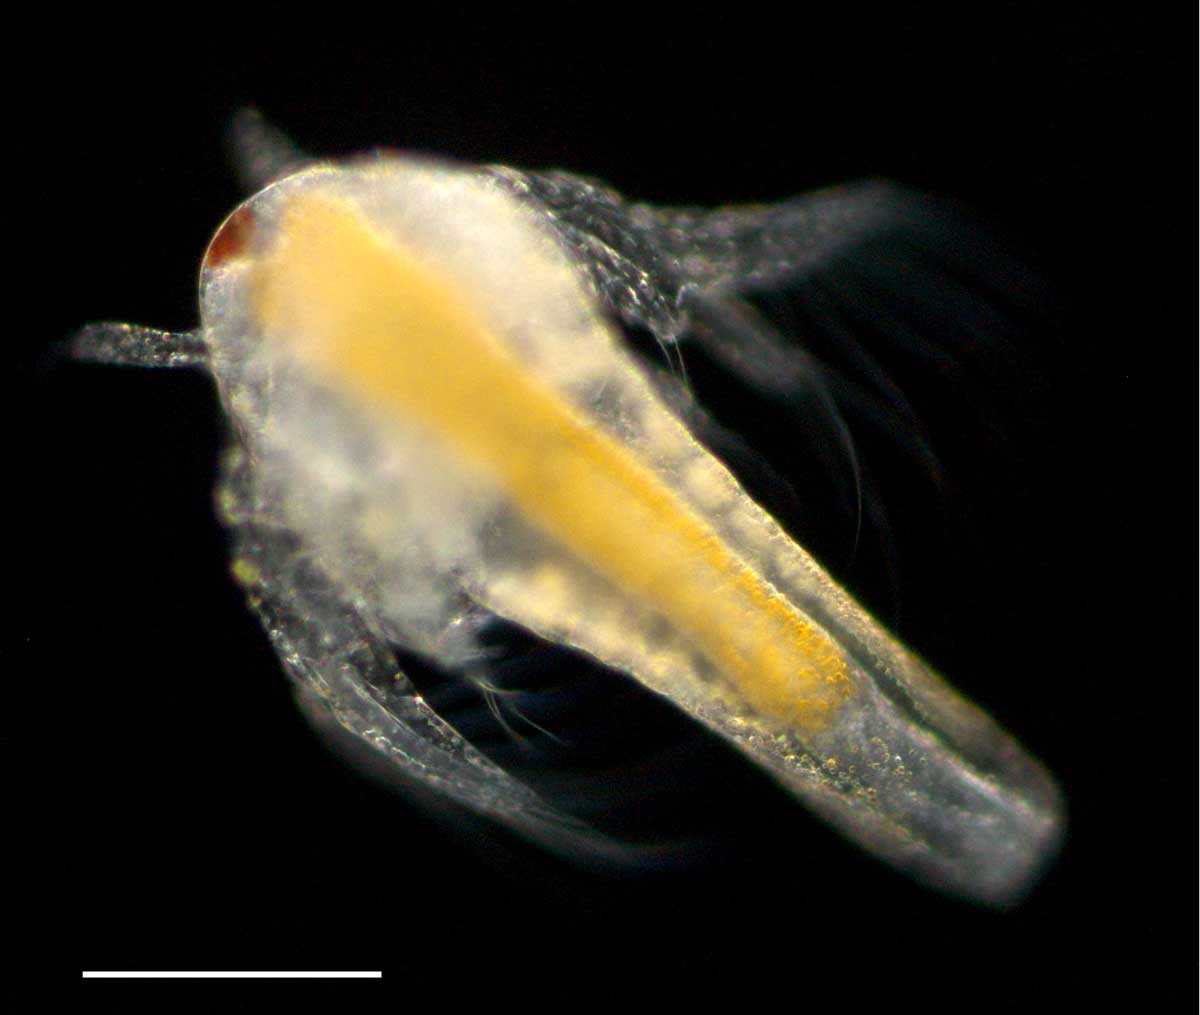 アルテミア (Artemia salina) の幼生1期の画像です。